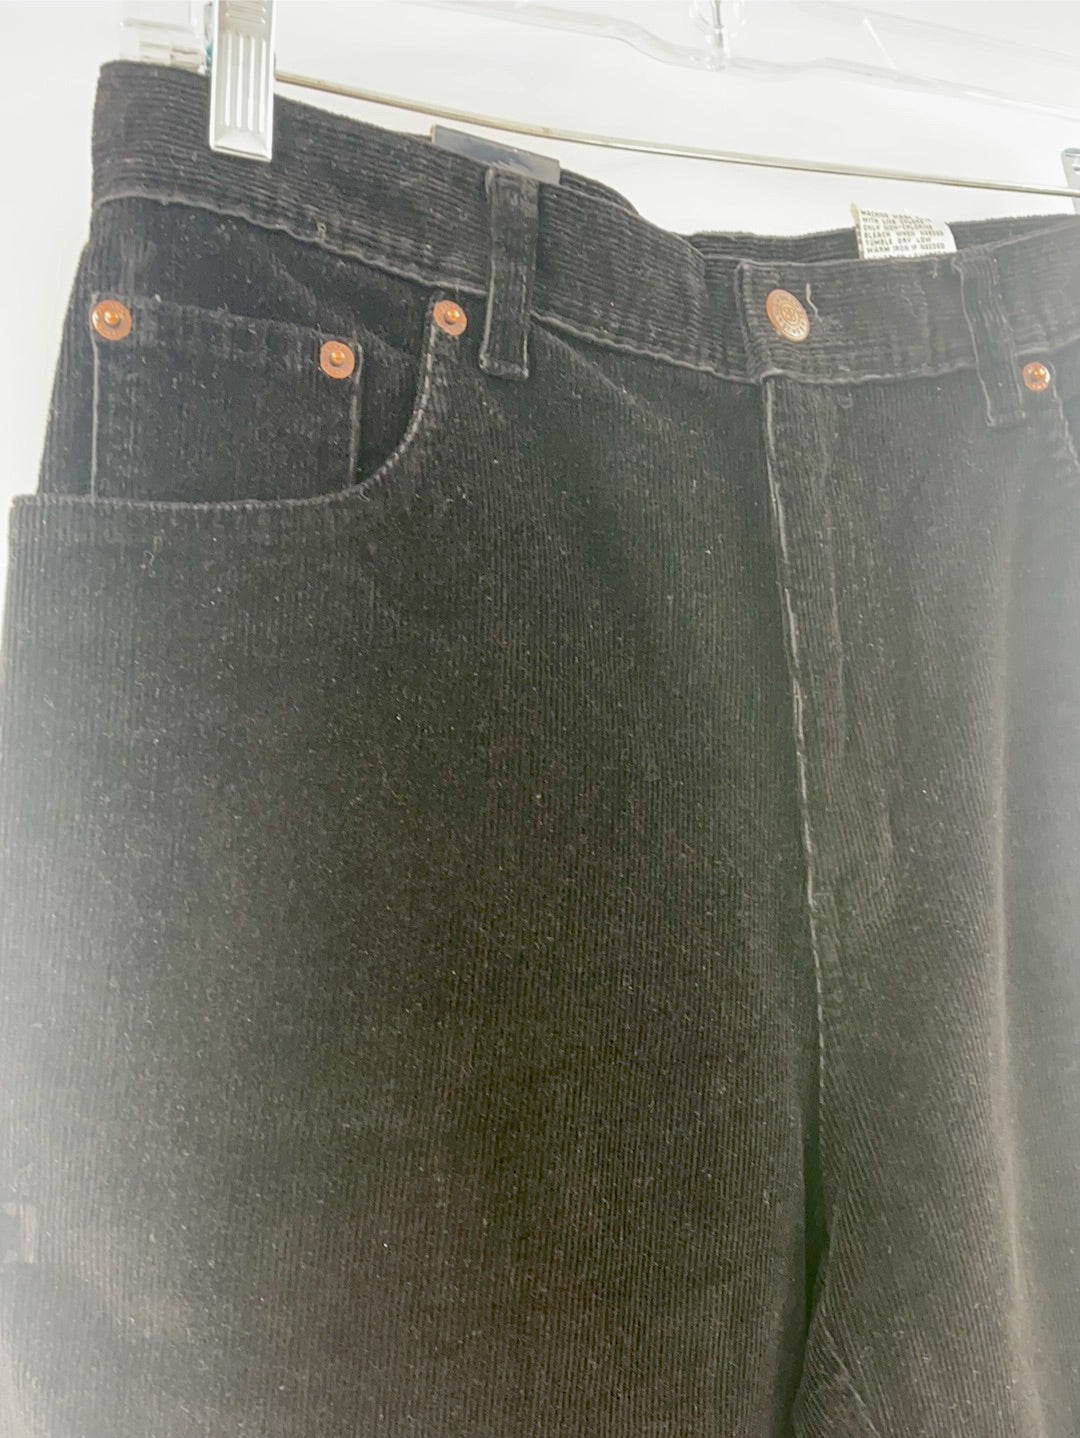 Bill Blass Jeanswear Stretch Corduroy Deadstock (Size 10 Average)